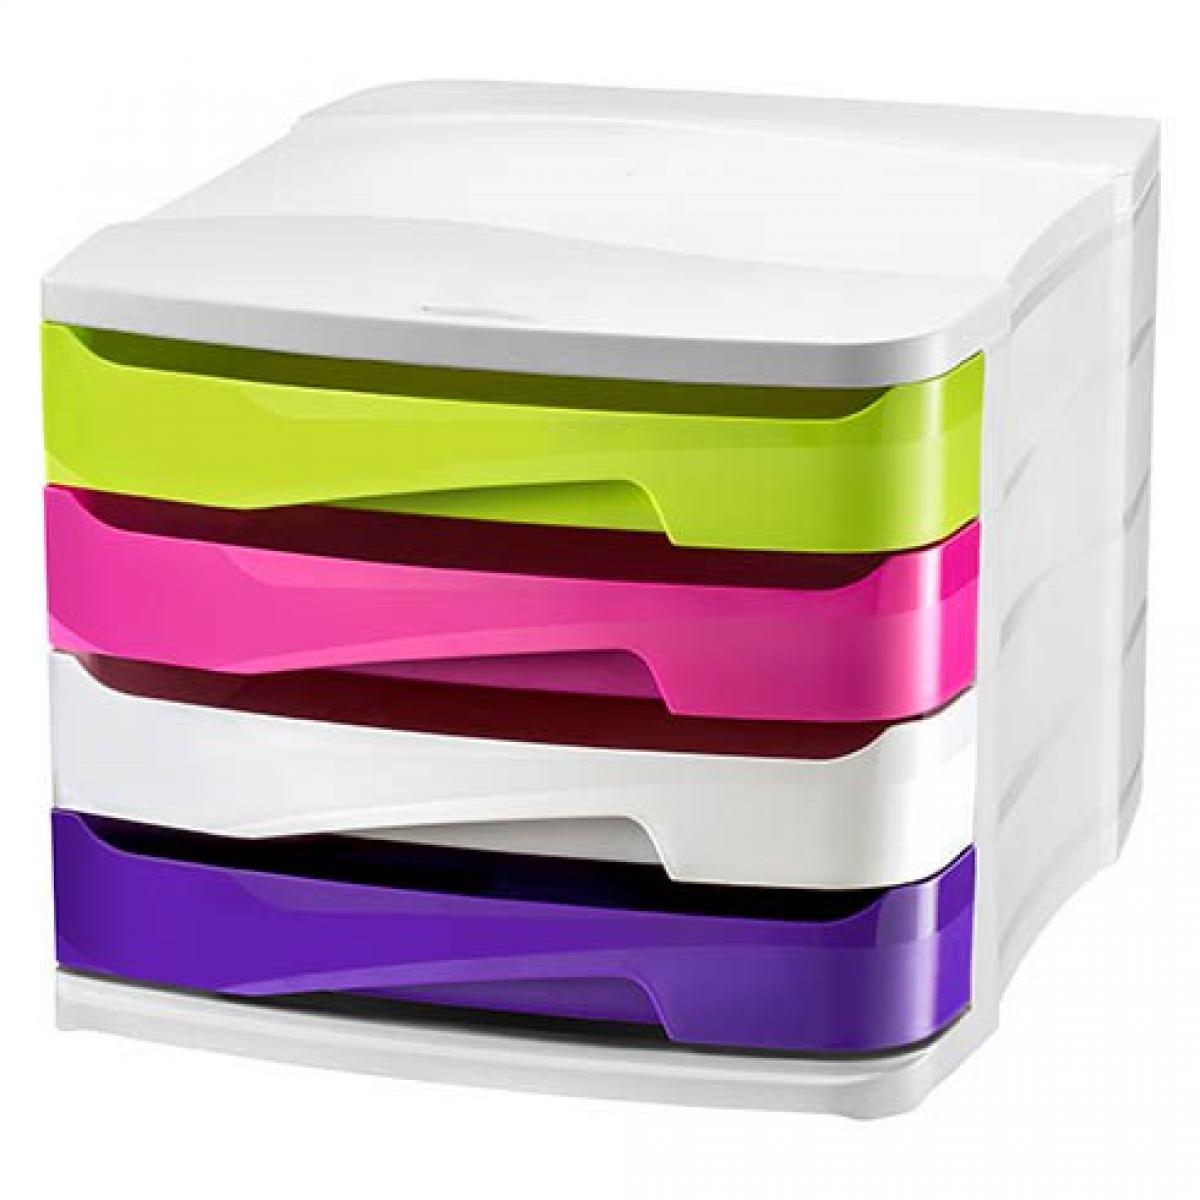 Cep - Module de classement Cep Gloss coffre blanc - 4 tiroirs opaques multicolores - Accessoires Bureau